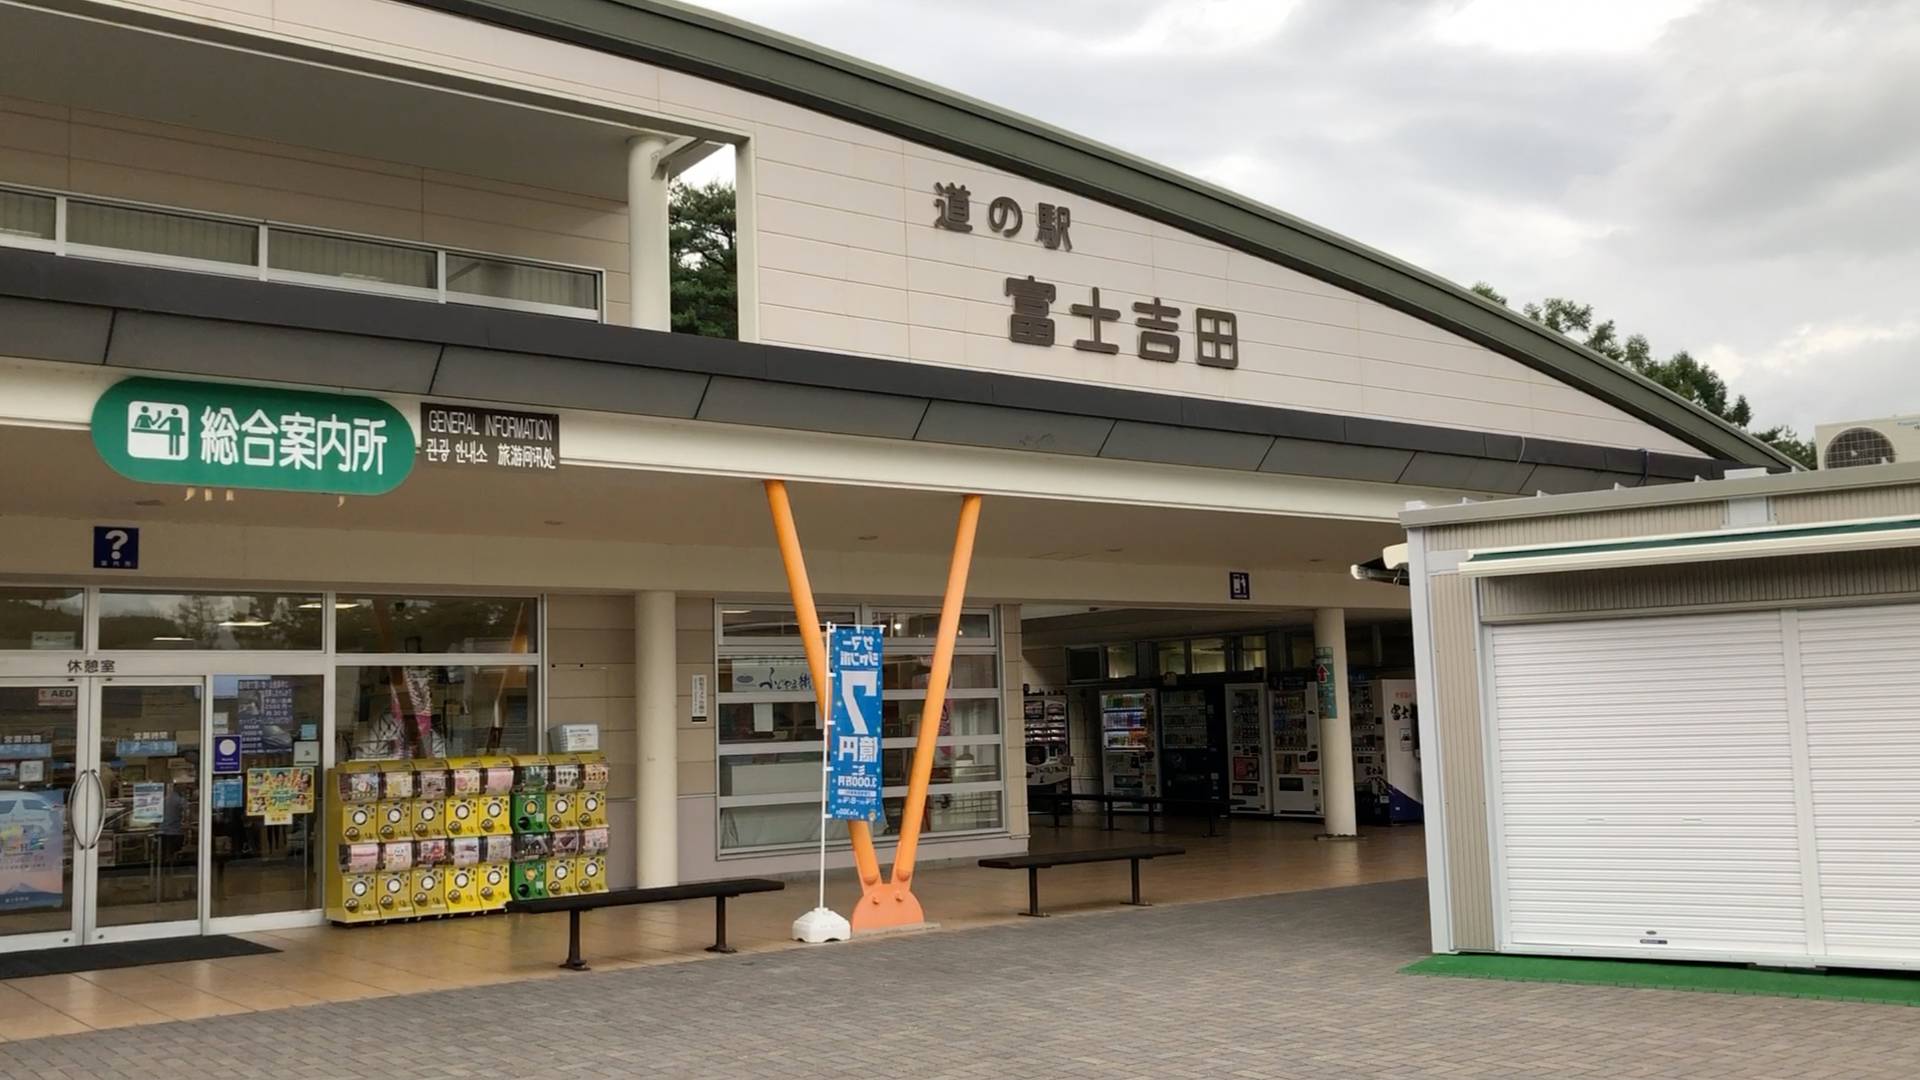 【軽バン車中泊6】とある理由により道の駅富士吉田から八ヶ岳PAに車中泊場所を変更